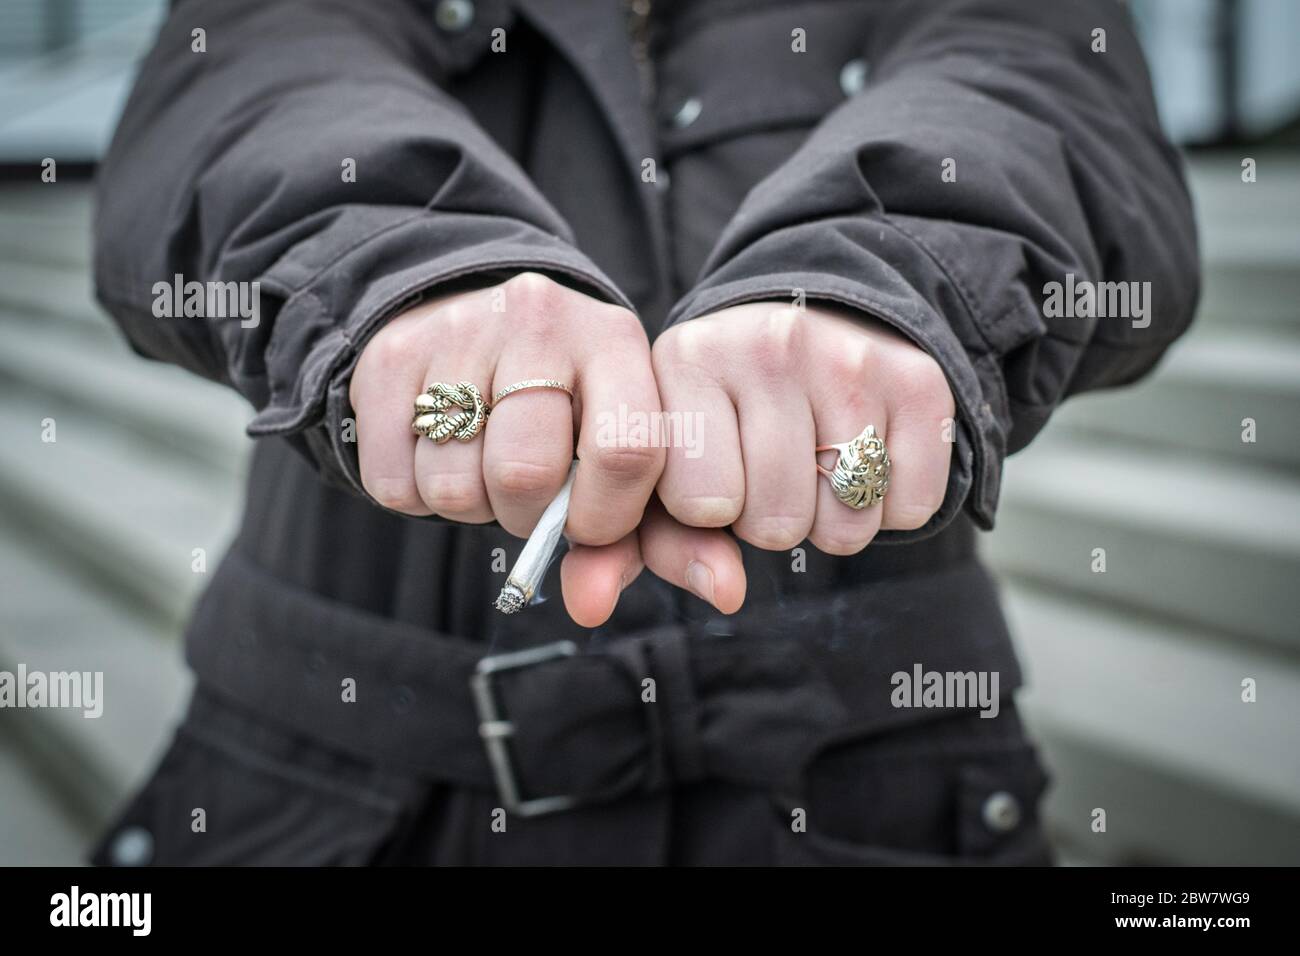 Jugendliche zeigt Fäuste mit Zigarette Foto de stock